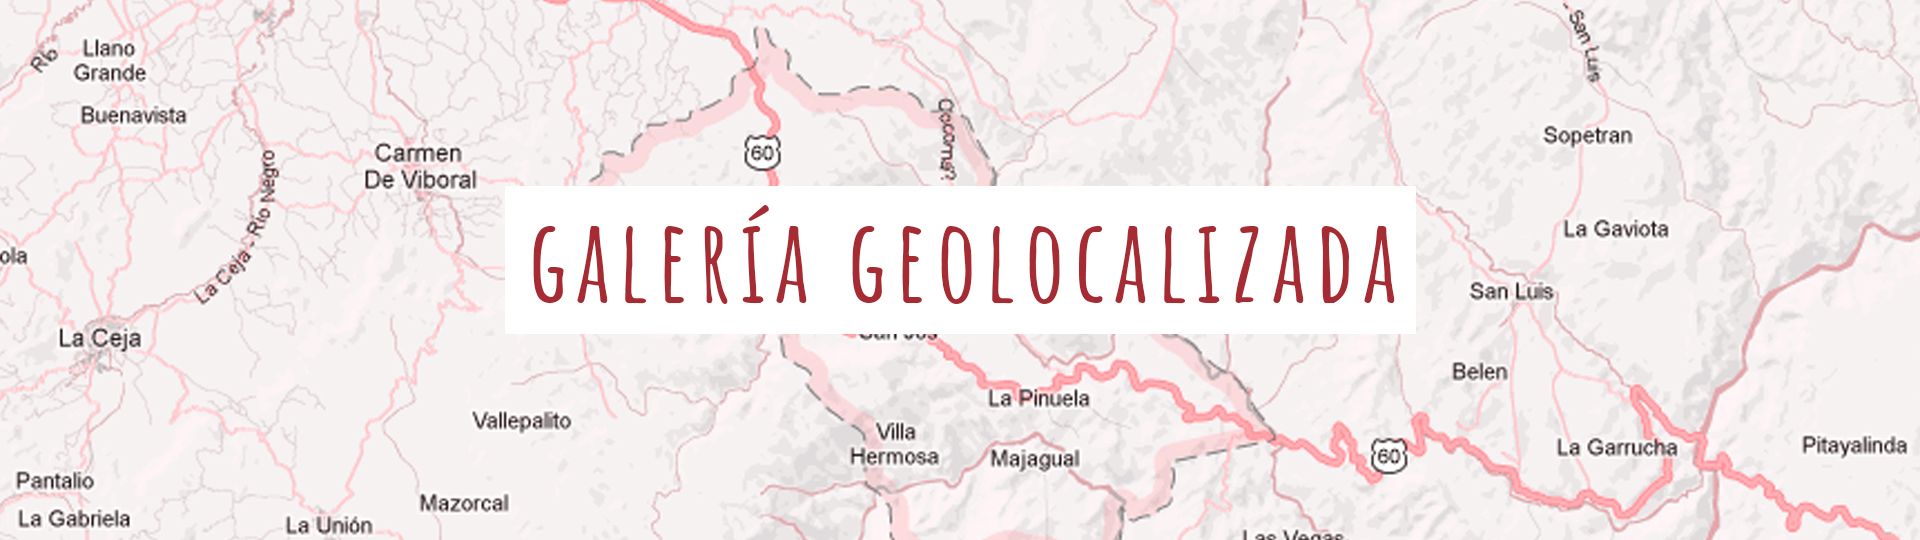 galeria-geolocalizada-2